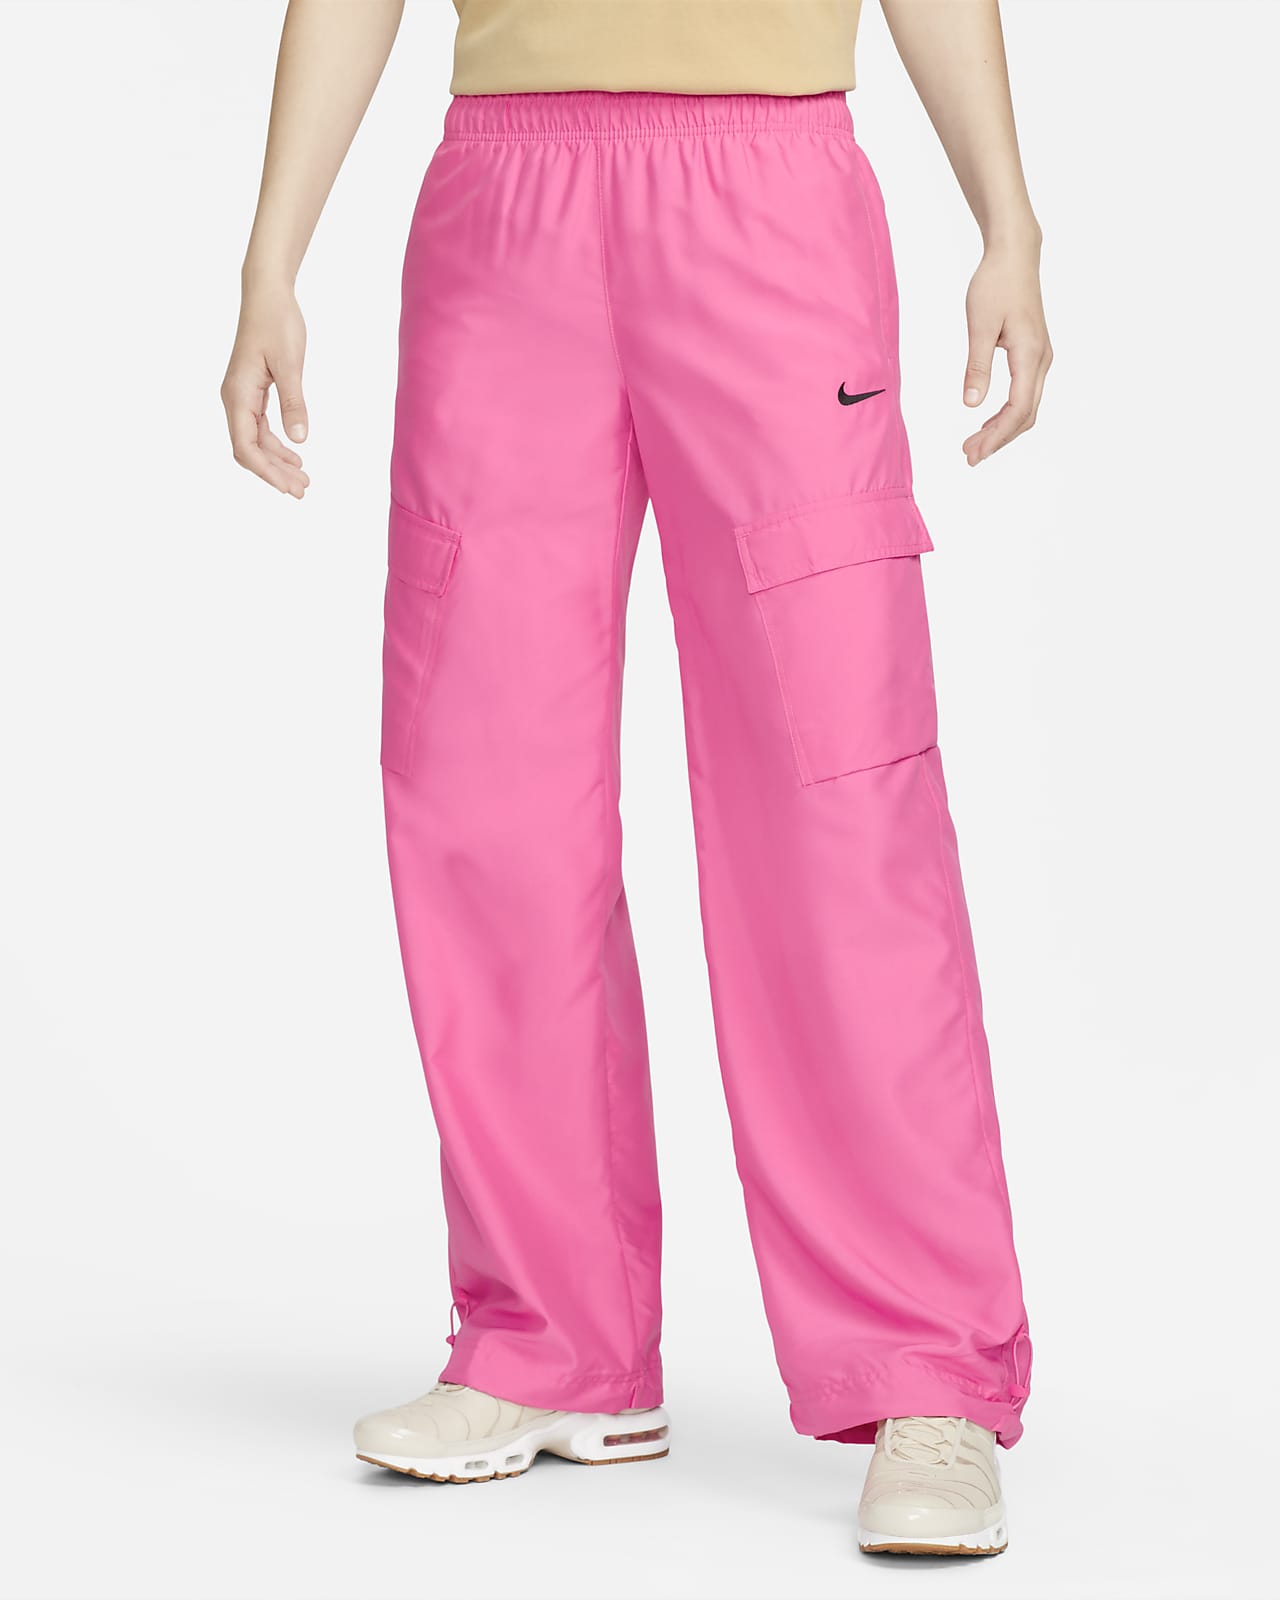 Nike Sportswear Women's Woven Cargo Trousers.